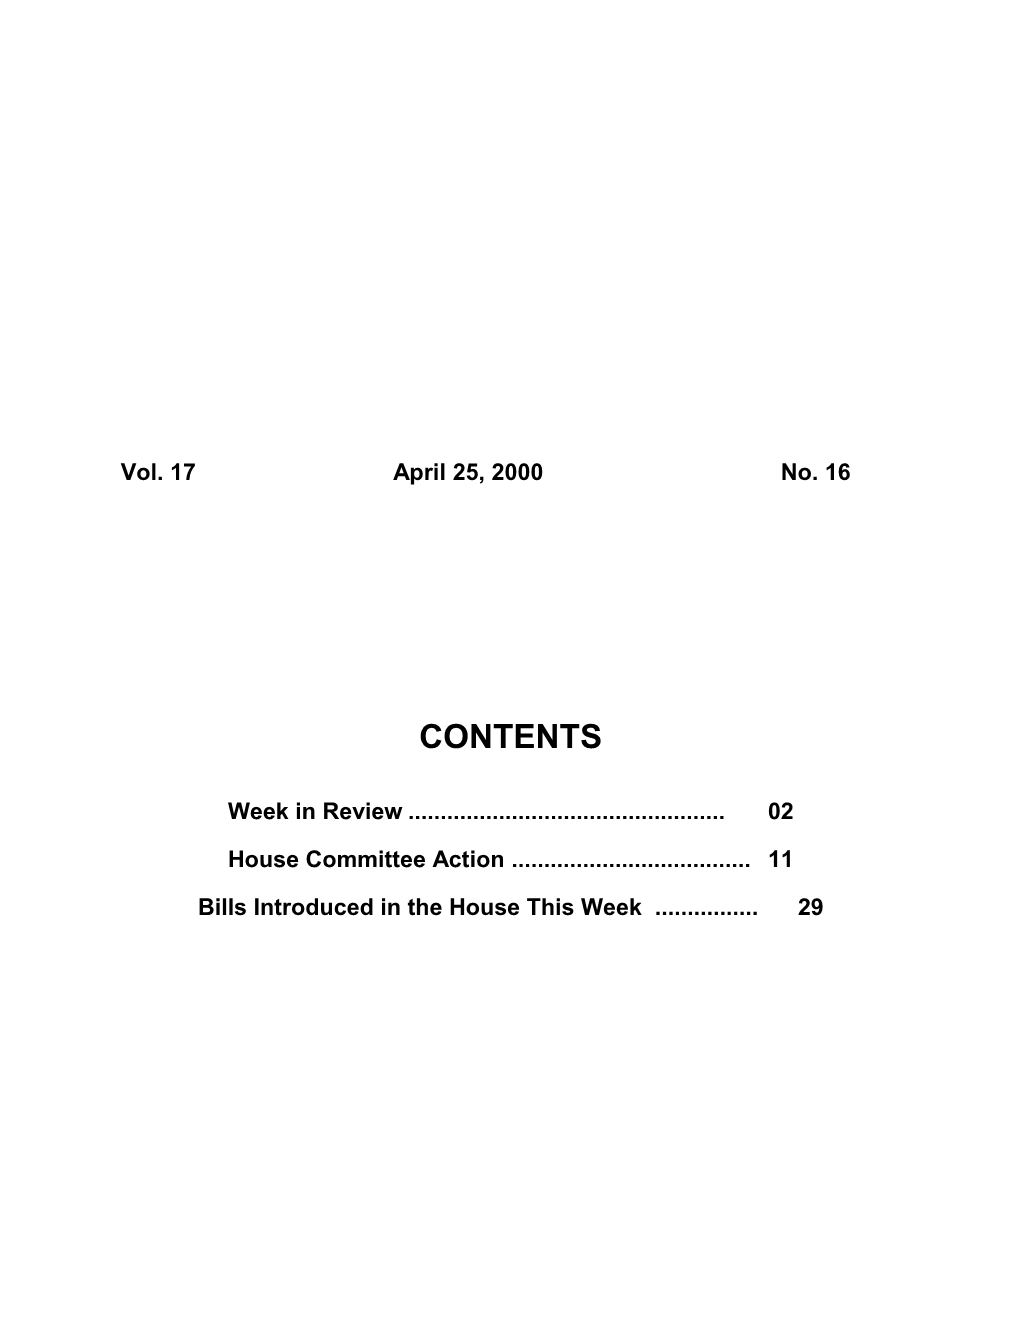 Legislative Update - Vol. 17 No. 16 April 25, 2000 - South Carolina Legislature Online